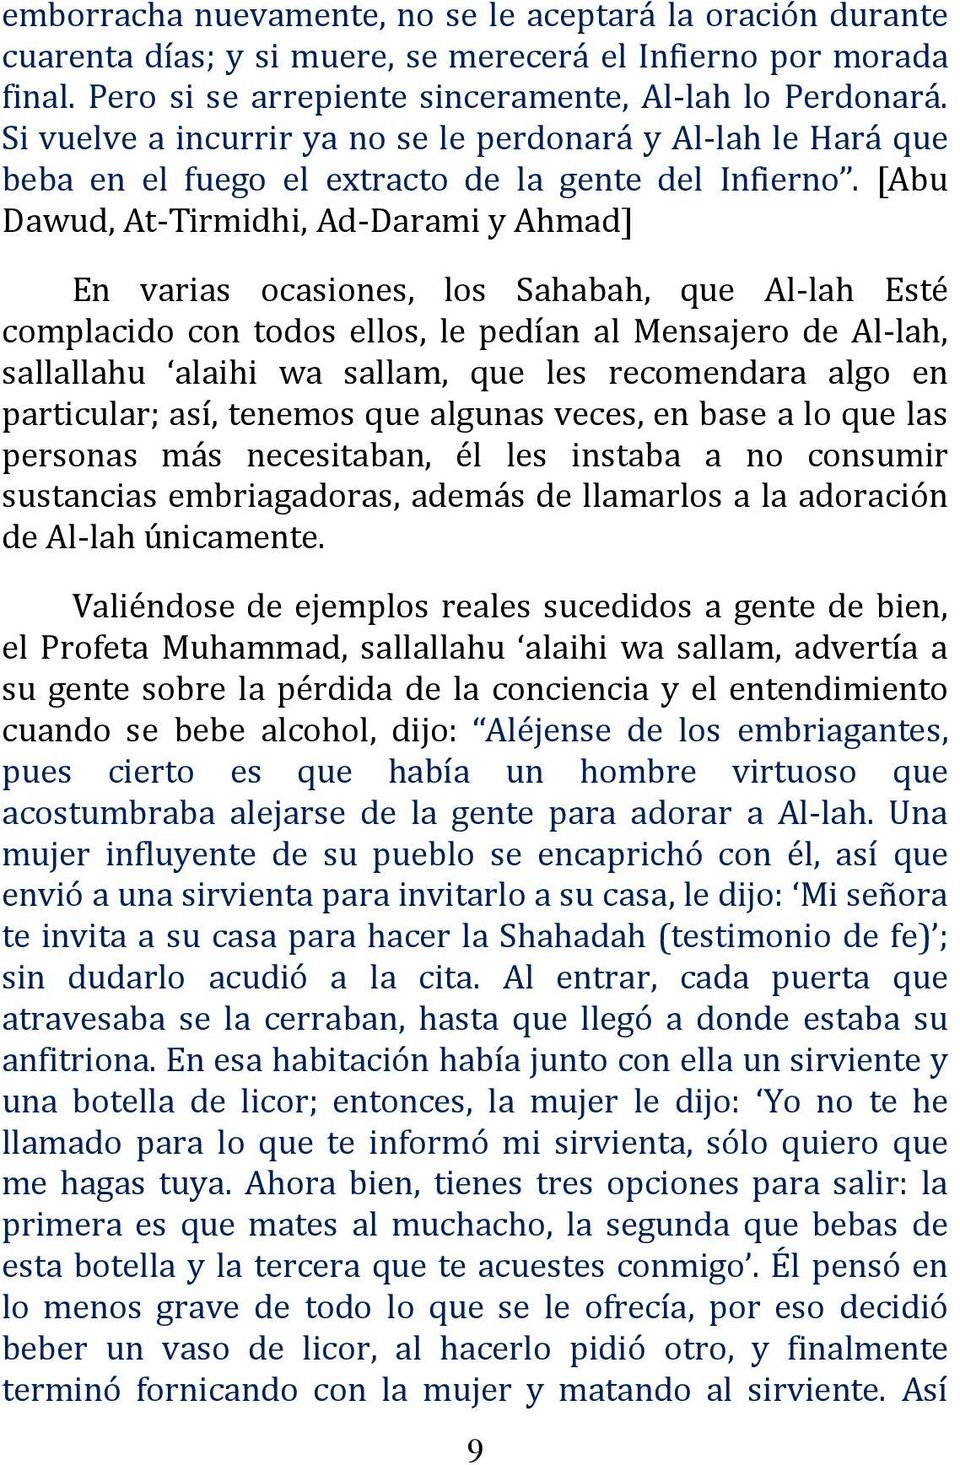 [Abu Dawud, At-Tirmidhi, Ad-Darami y Ahmad] En varias ocasiones, los Sahabah, que Al-lah Esté complacido con todos ellos, le pedían al Mensajero de Al-lah, sallallahu alaihi wa sallam, que les